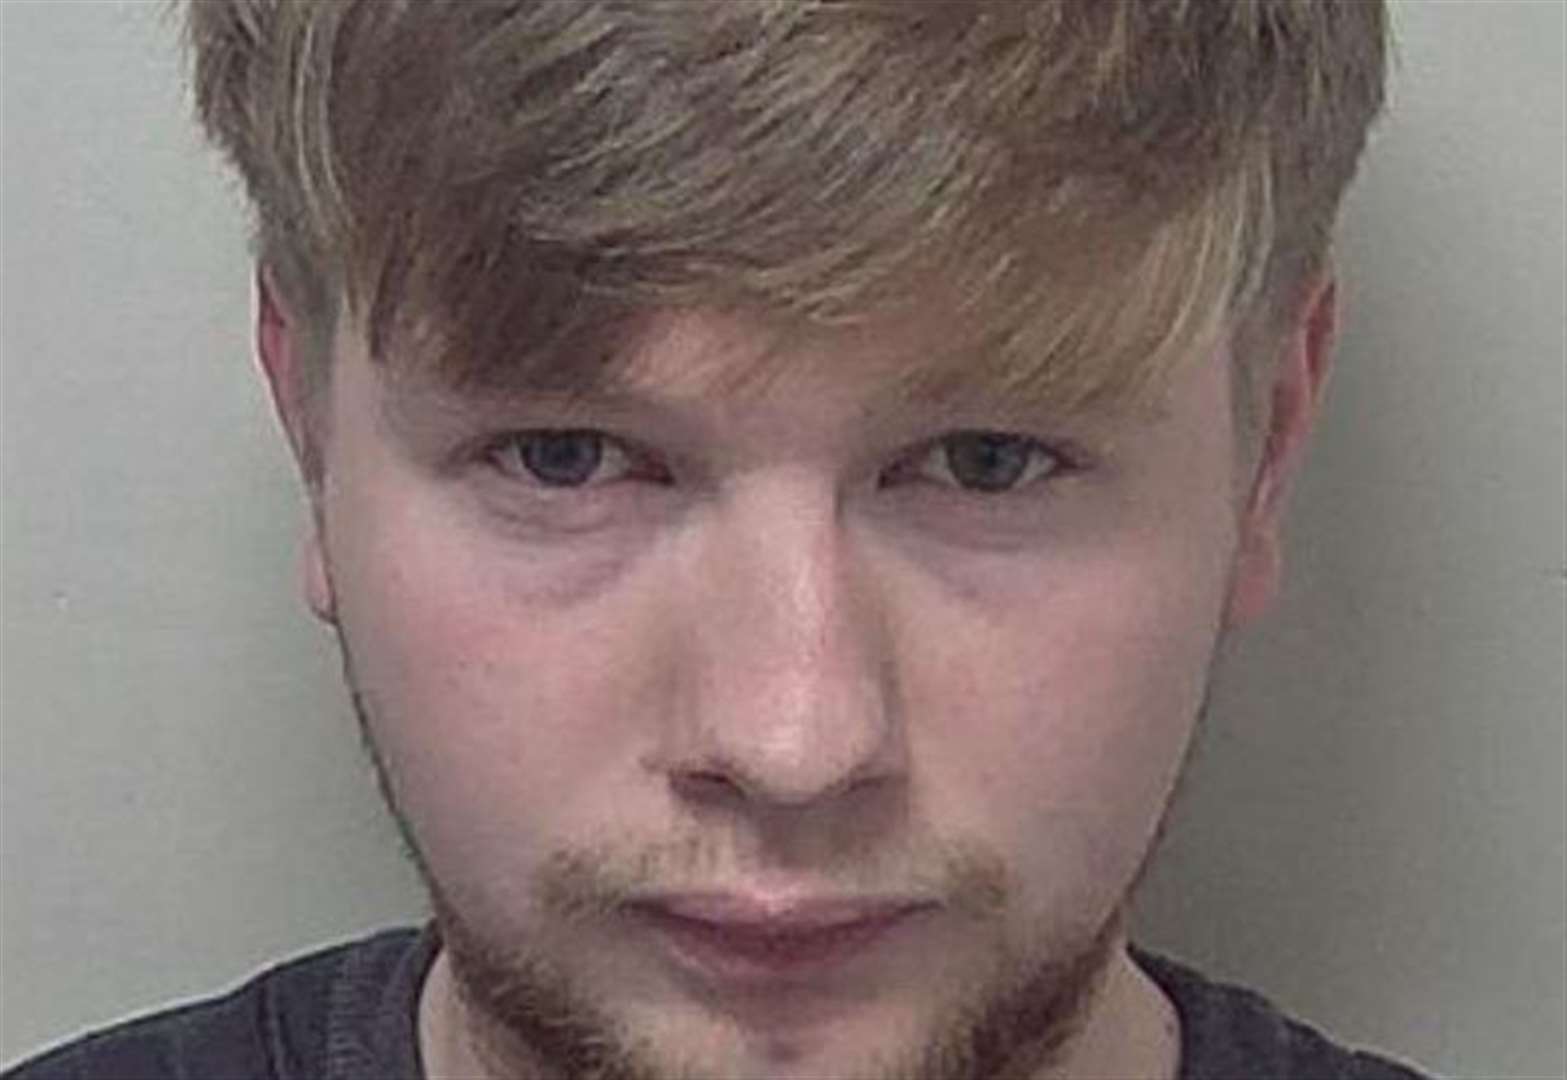 Teens kicked man in head in senseless spate of attacks